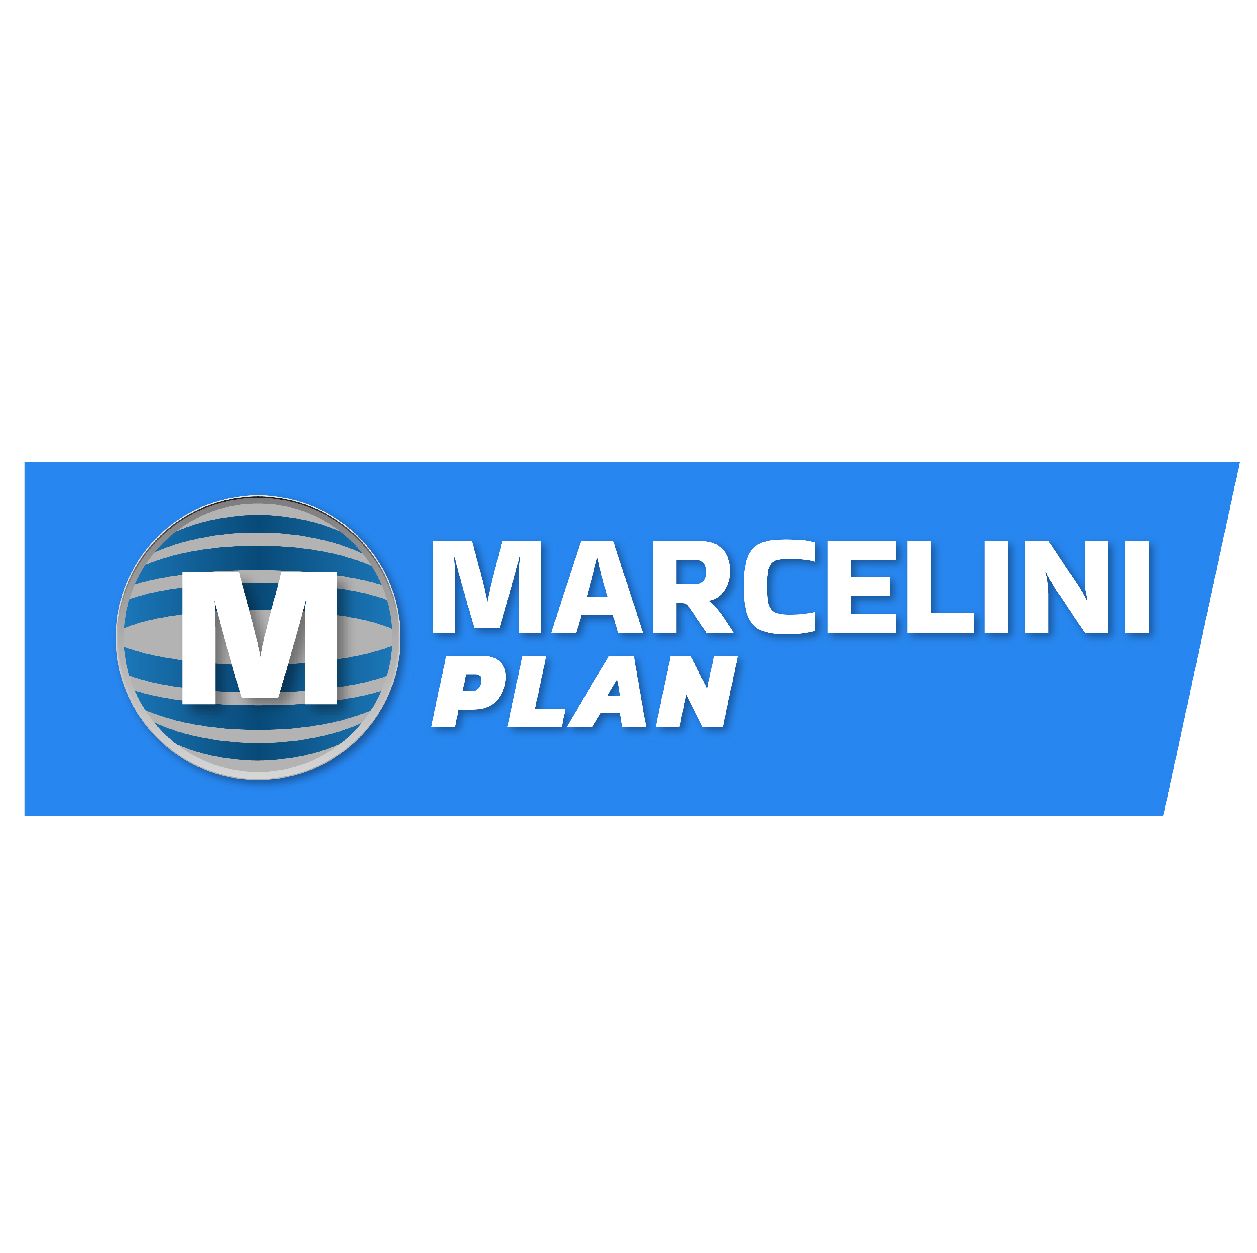 Marcelini